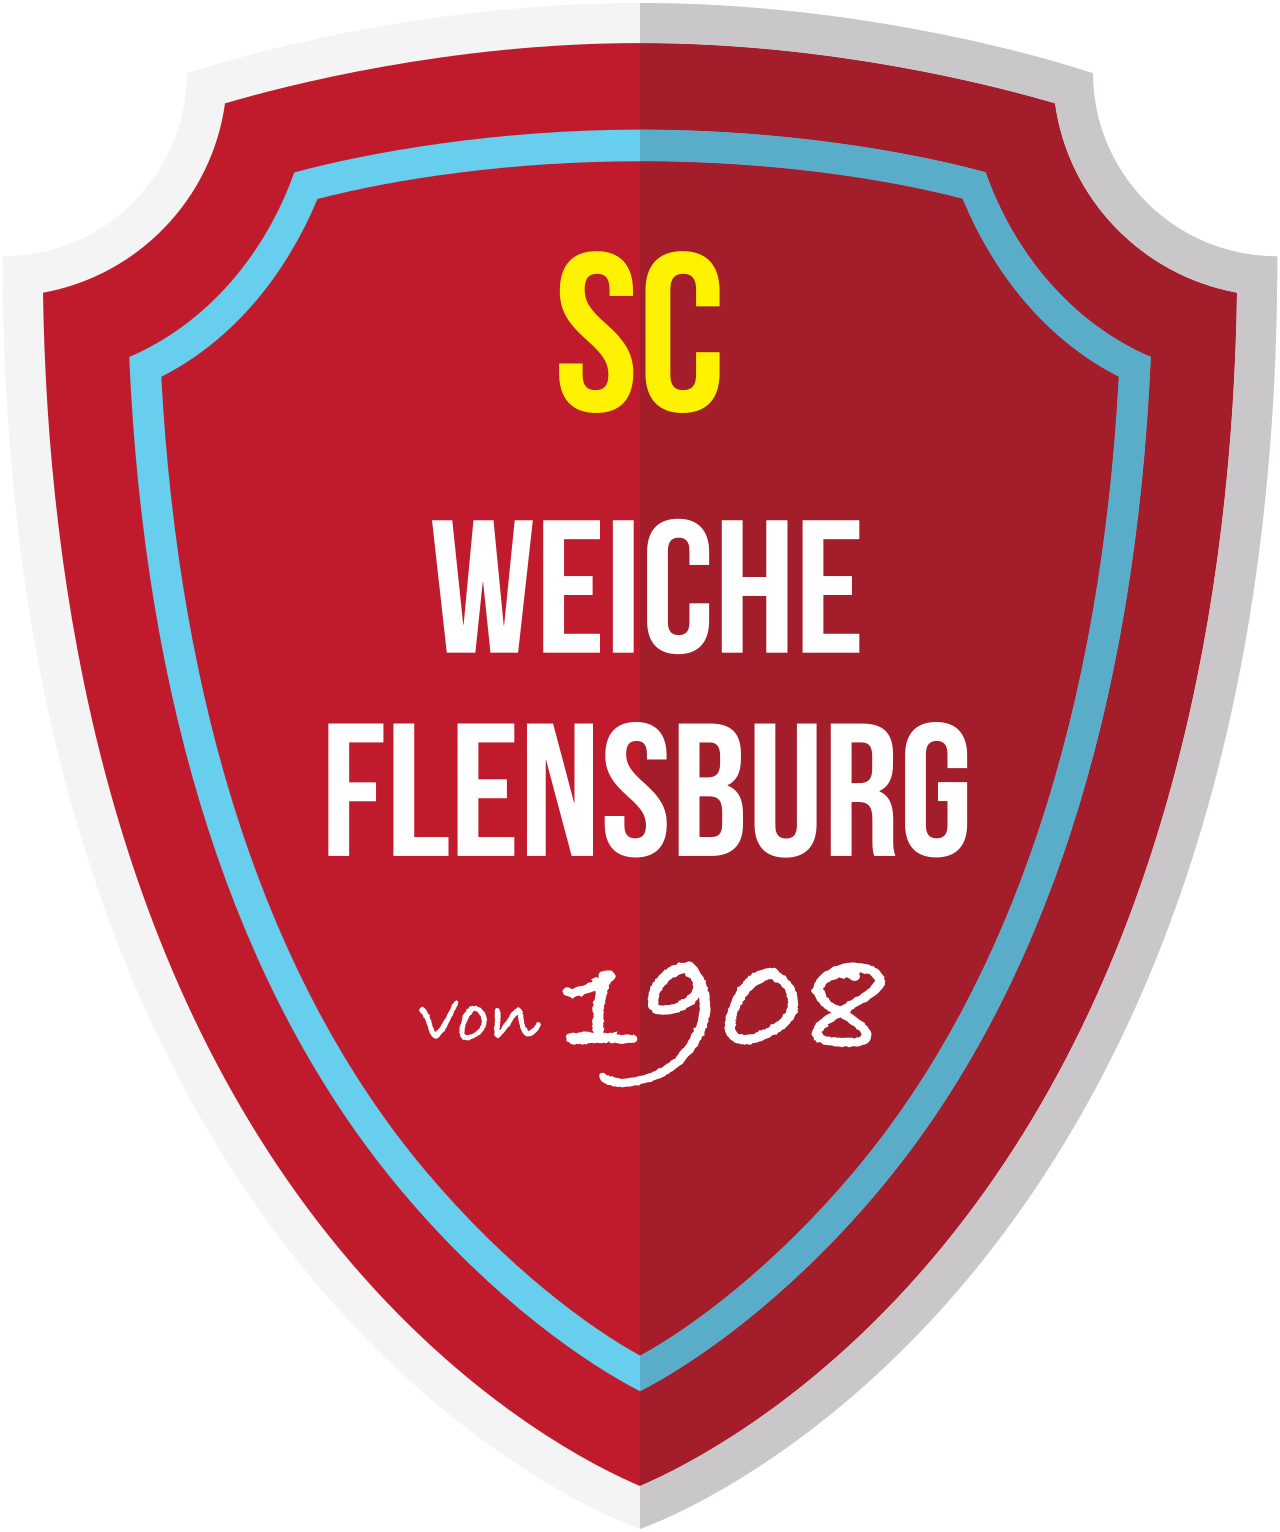 SC Weiche Flensburg